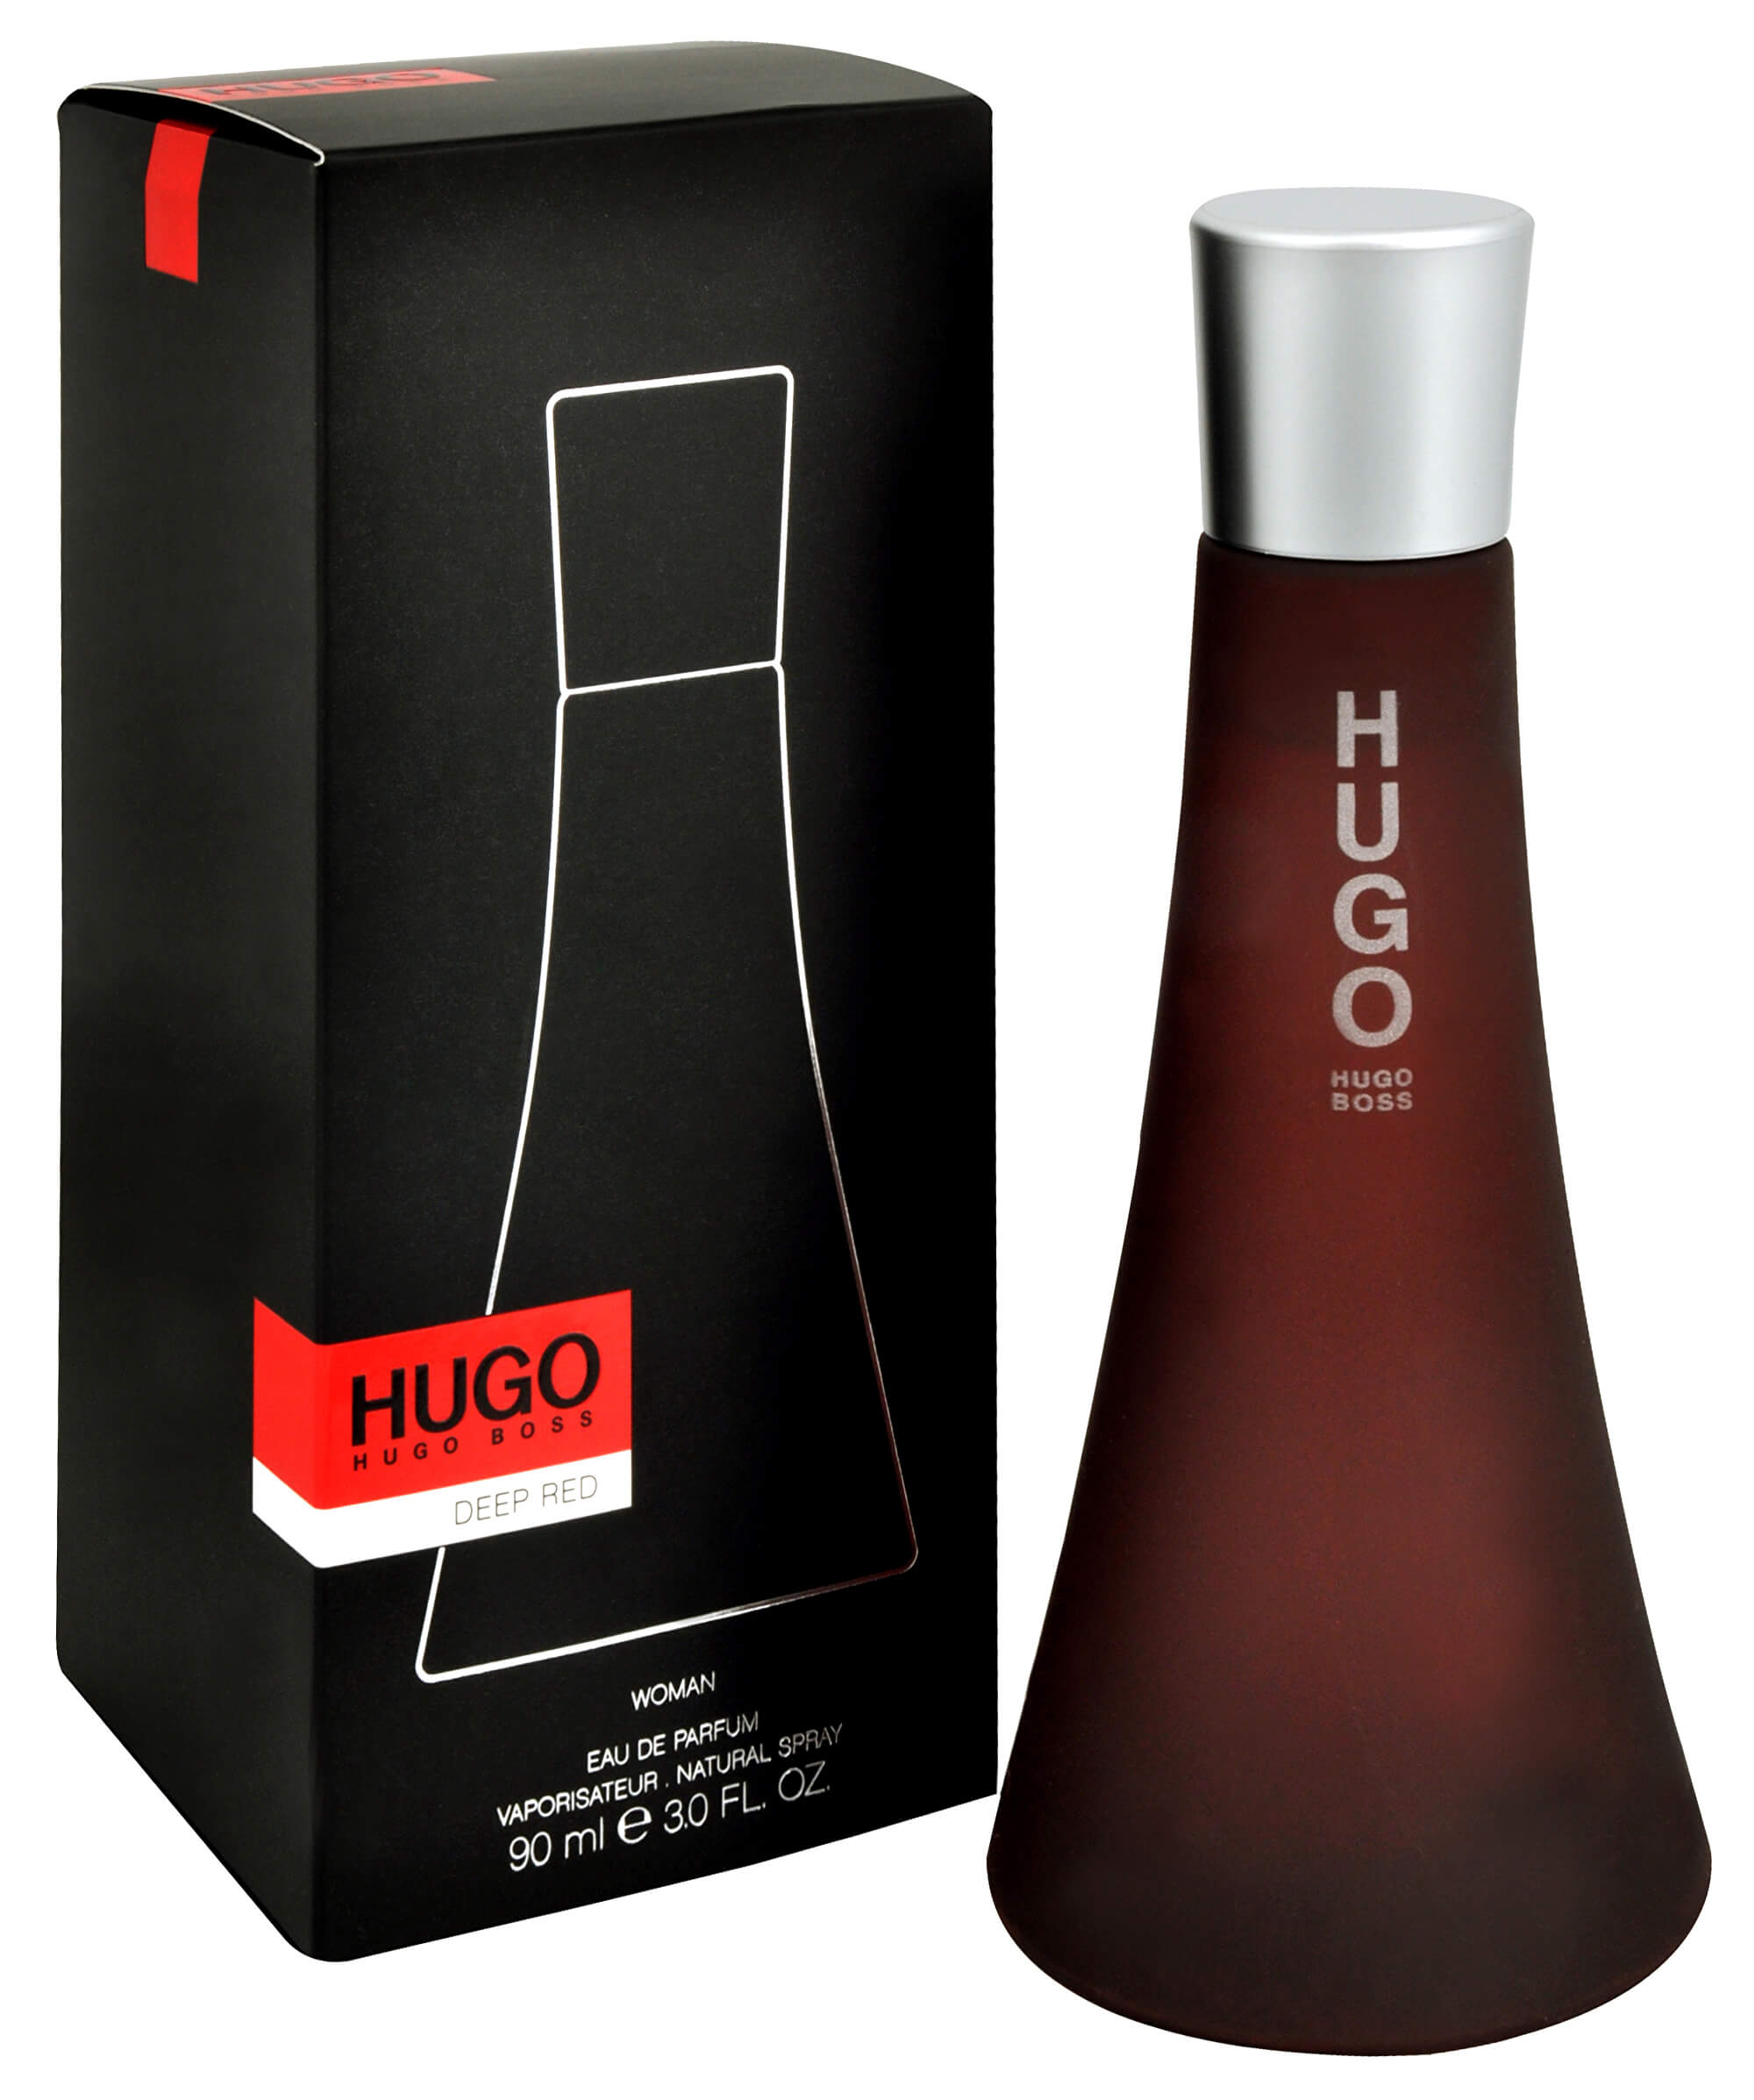 Хуго босс черный. Хьюго босс дип ред. Хуго босс дип ред женские. Туалетная вода Hugo Boss Deep Red. Deep Red Eau de Parfum Hugo Boss.